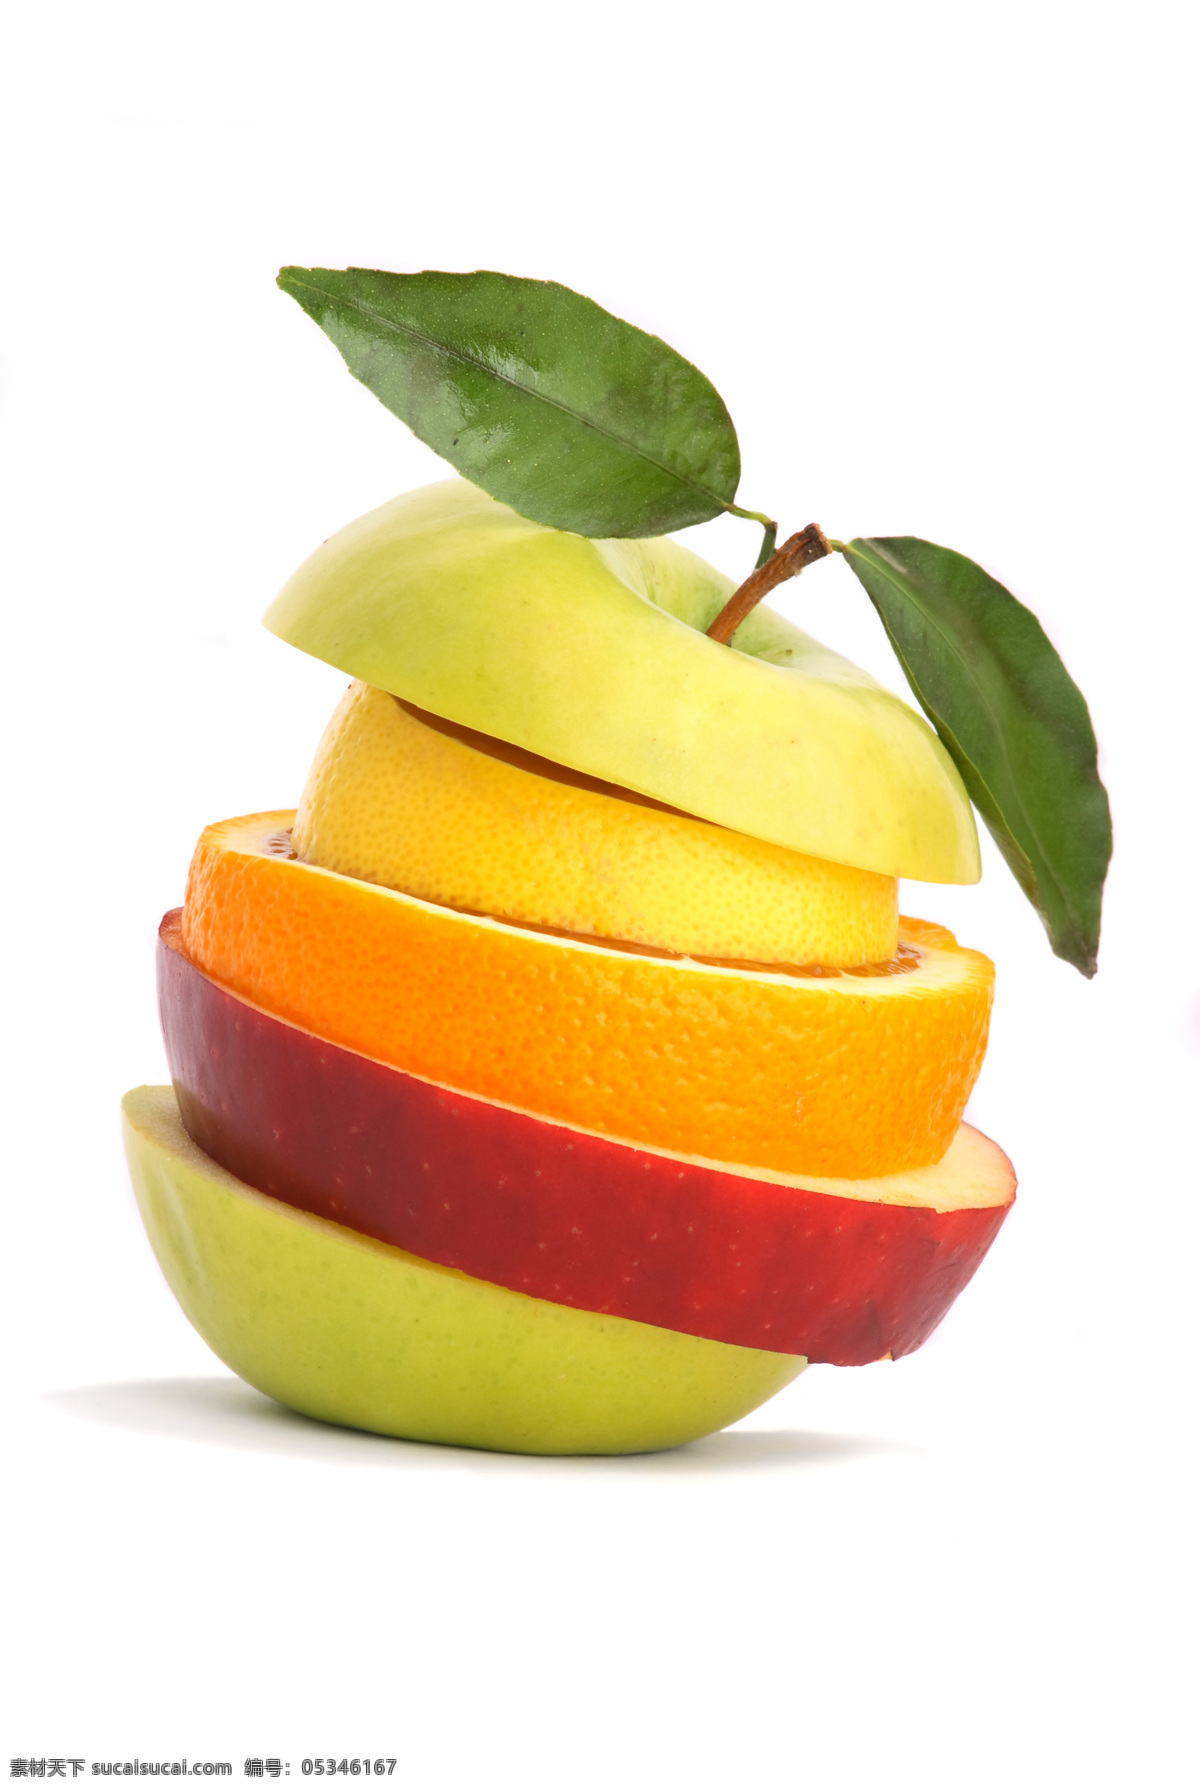 水果拼图 创意 奇妙 有趣 青苹果 红苹果 橙子 梨 美味水果集锦 水果 生物世界